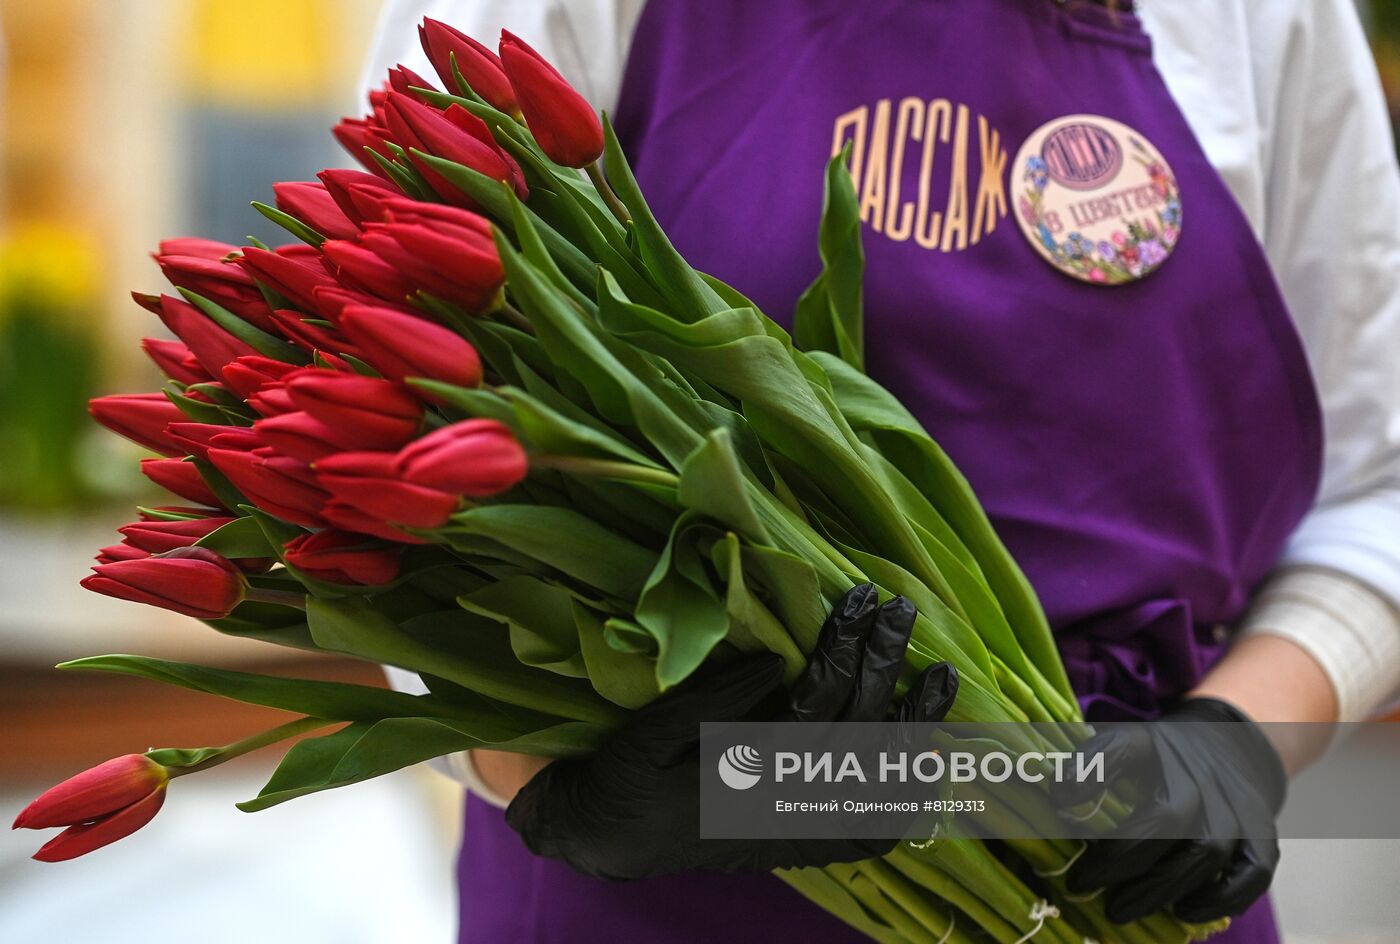 Цветочный базар в Петровском пассаже